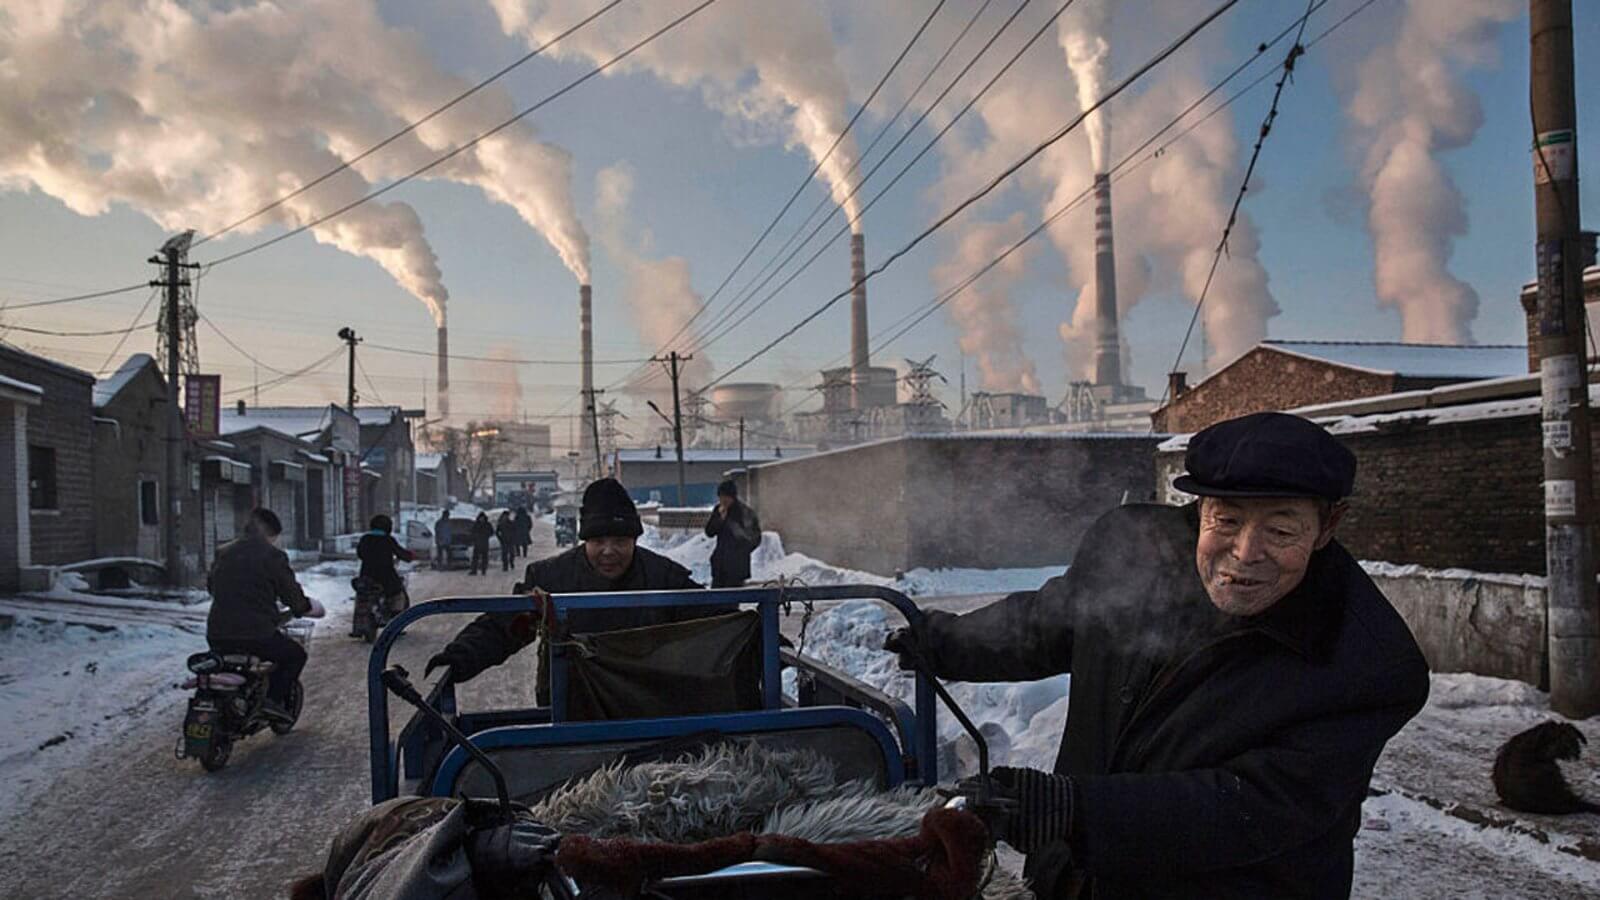 Вред майнинга для экологии. Массовое использование неэкологичных источников электроэнергии привело к настоящей экологической катастрофе в Китае. Фото.